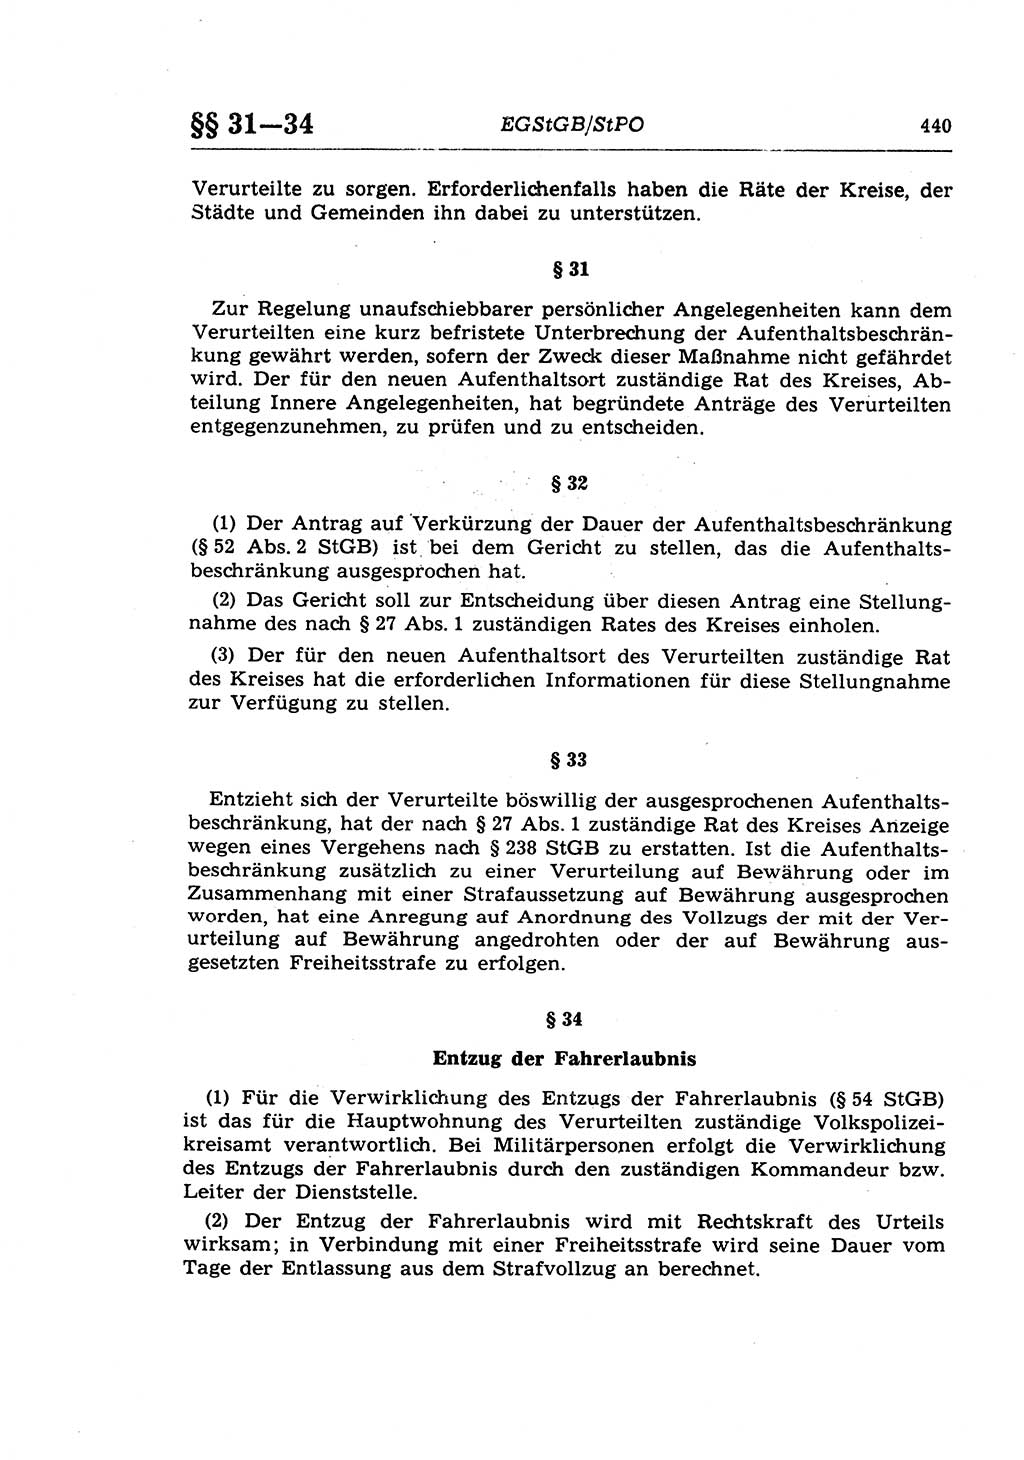 Strafprozeßrecht der DDR (Deutsche Demokratische Republik), Lehrkommentar zur Strafprozeßordnung (StPO) 1968, Seite 440 (Strafprozeßr. DDR Lehrkomm. StPO 19688, S. 440)